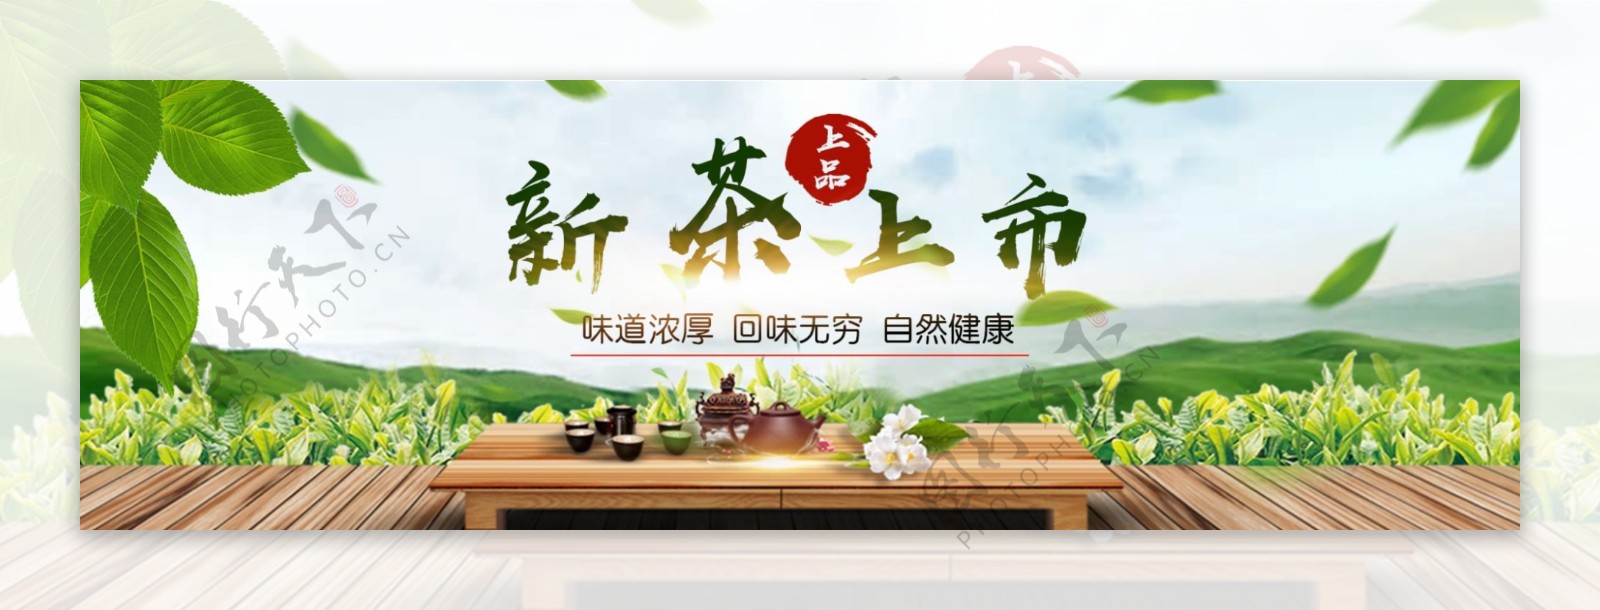 中国风小清新天猫淘宝茶叶海报设计